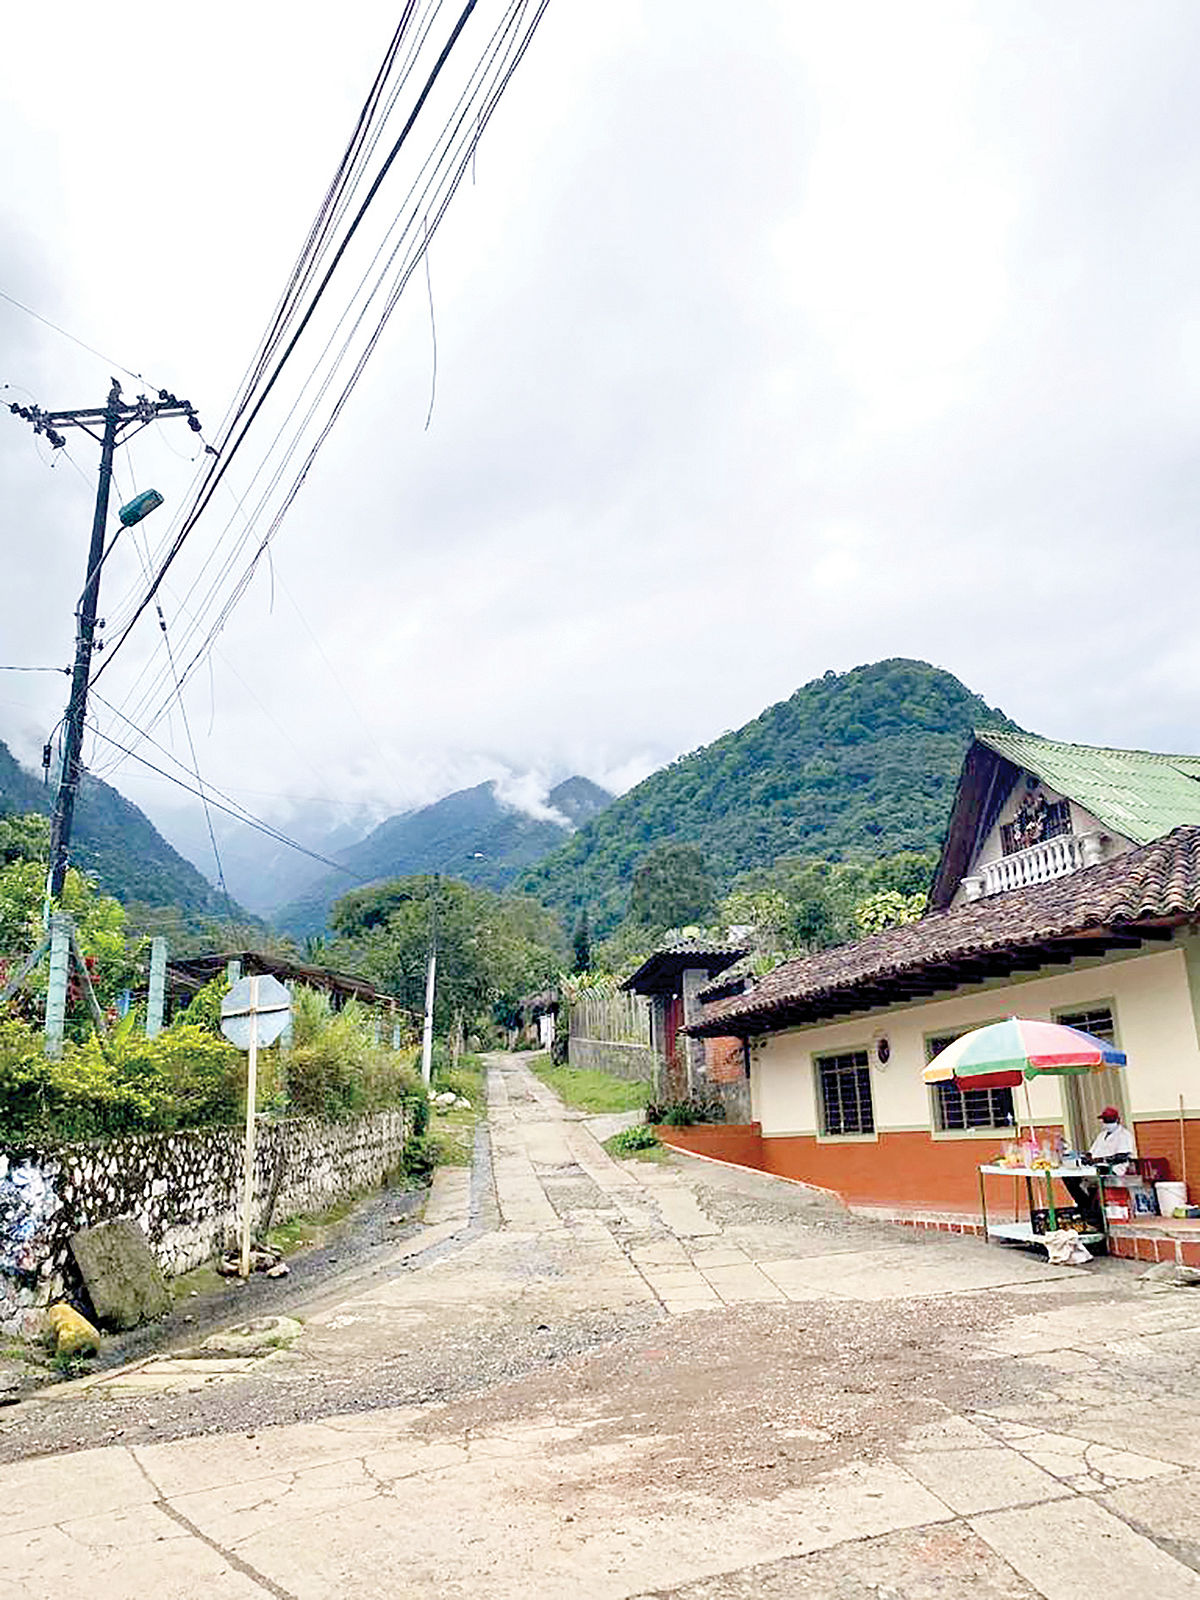 تجربه سفر توریستی به کلمبیا